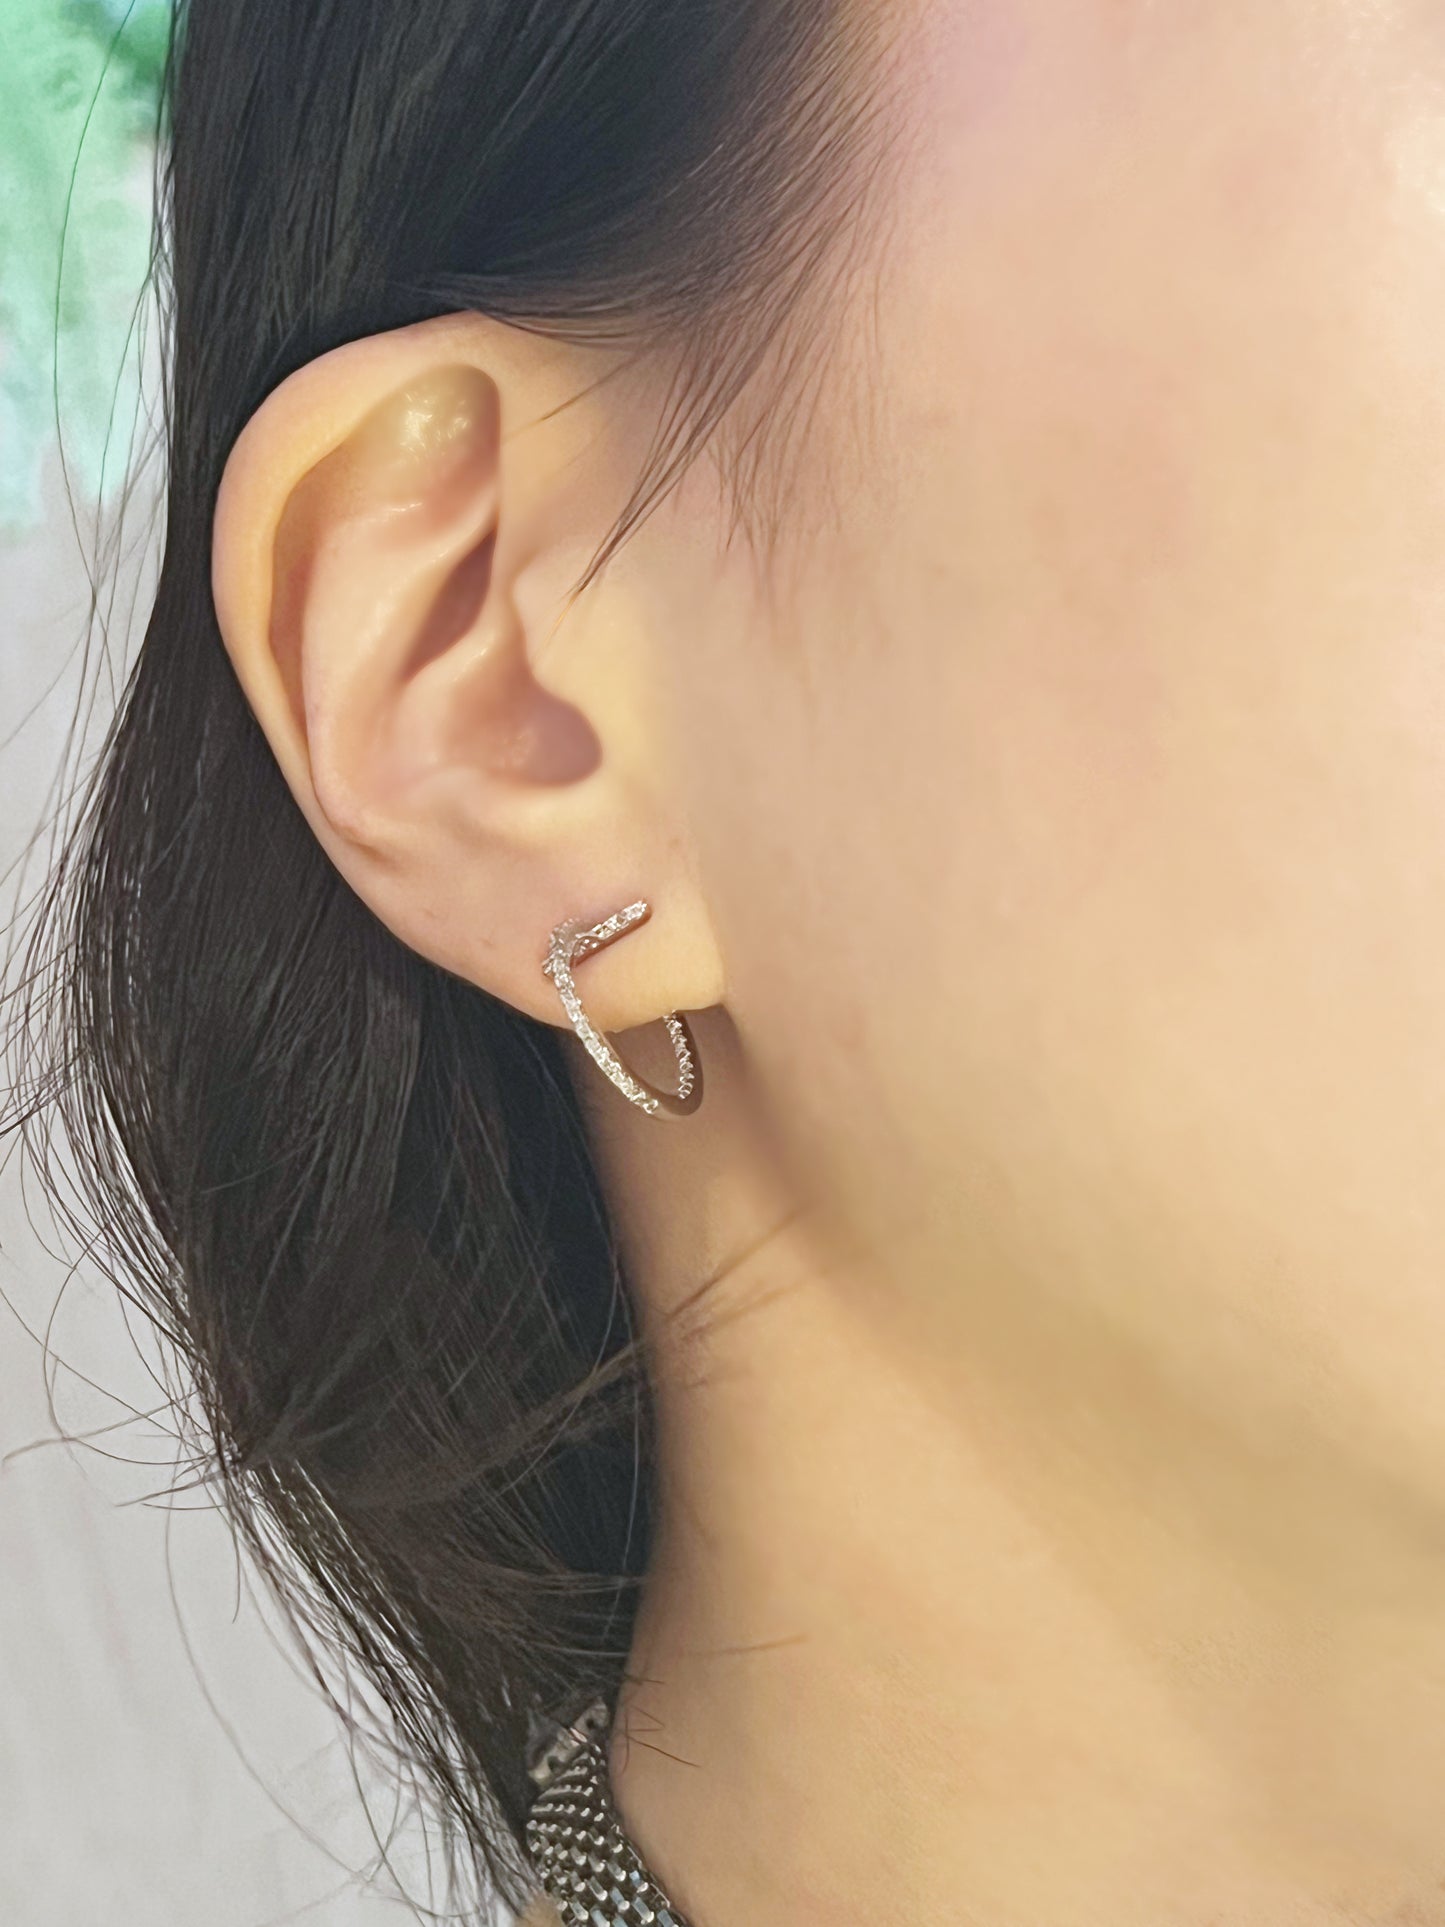 Cubic Bar Hoop Earrings ,cubic circle hoop earrings, classic earrings, daily earrings